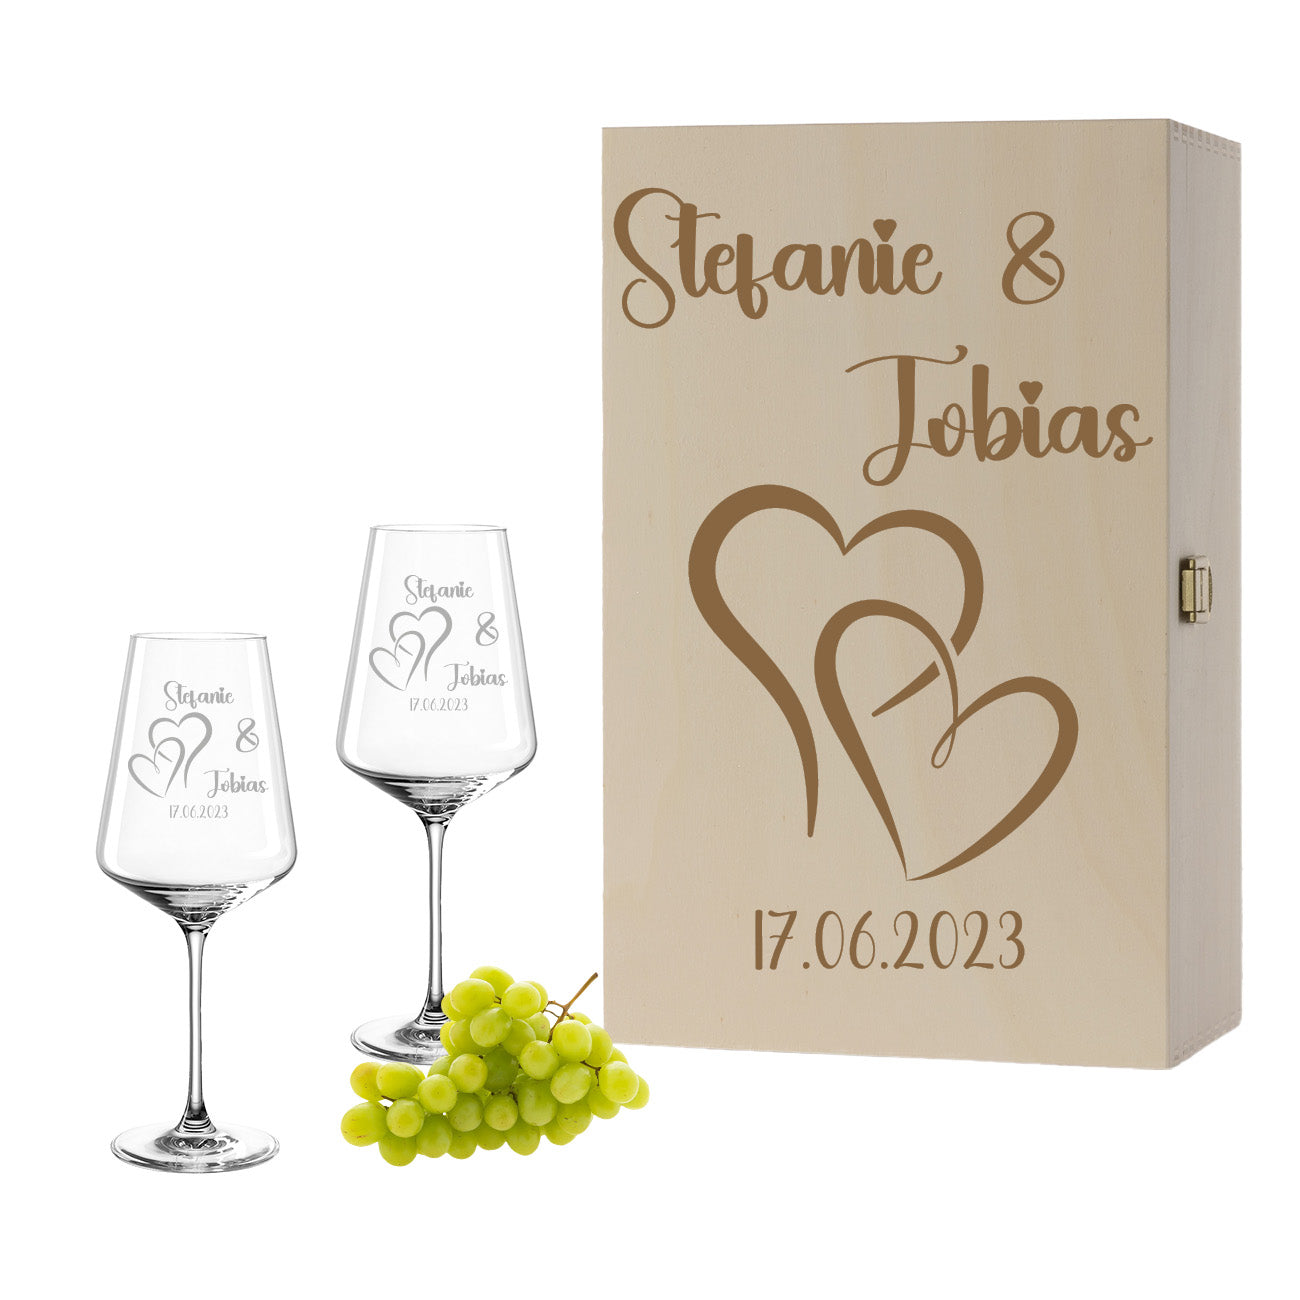 Weinglas mit Gravur Leonardo Puccini "LIEBES GLAS HERZ1" 2 Gläser und Holzbox groß mit Wunschname & Datum